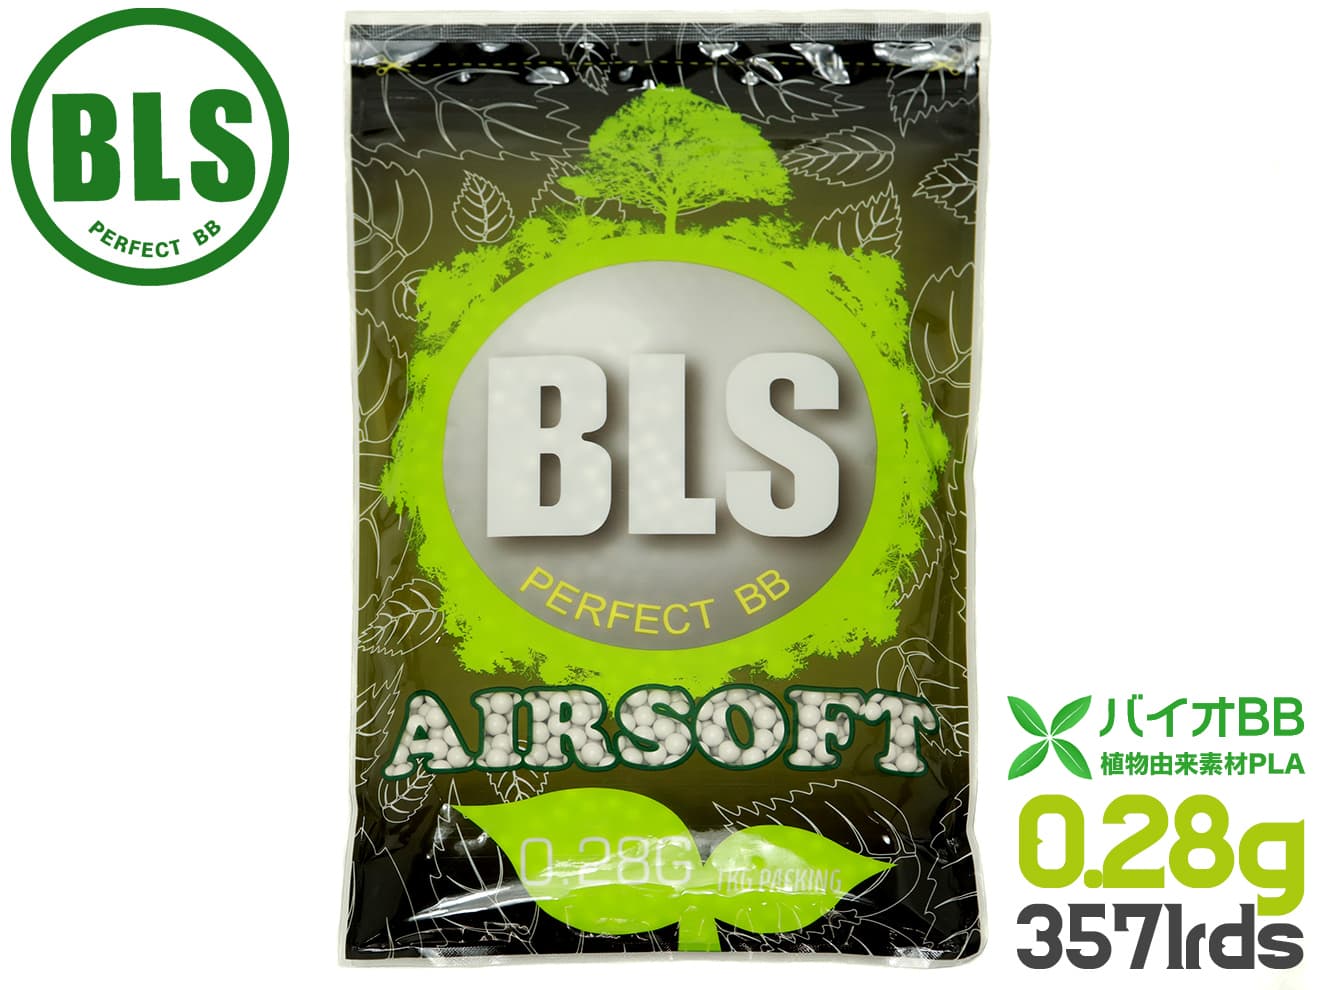 BLS 高品質PLA バイオBB弾 0.28g 3571発(1kg)◆植物由来バイオビービー弾 高精度 プラスチック 環境に優しい アウトド…